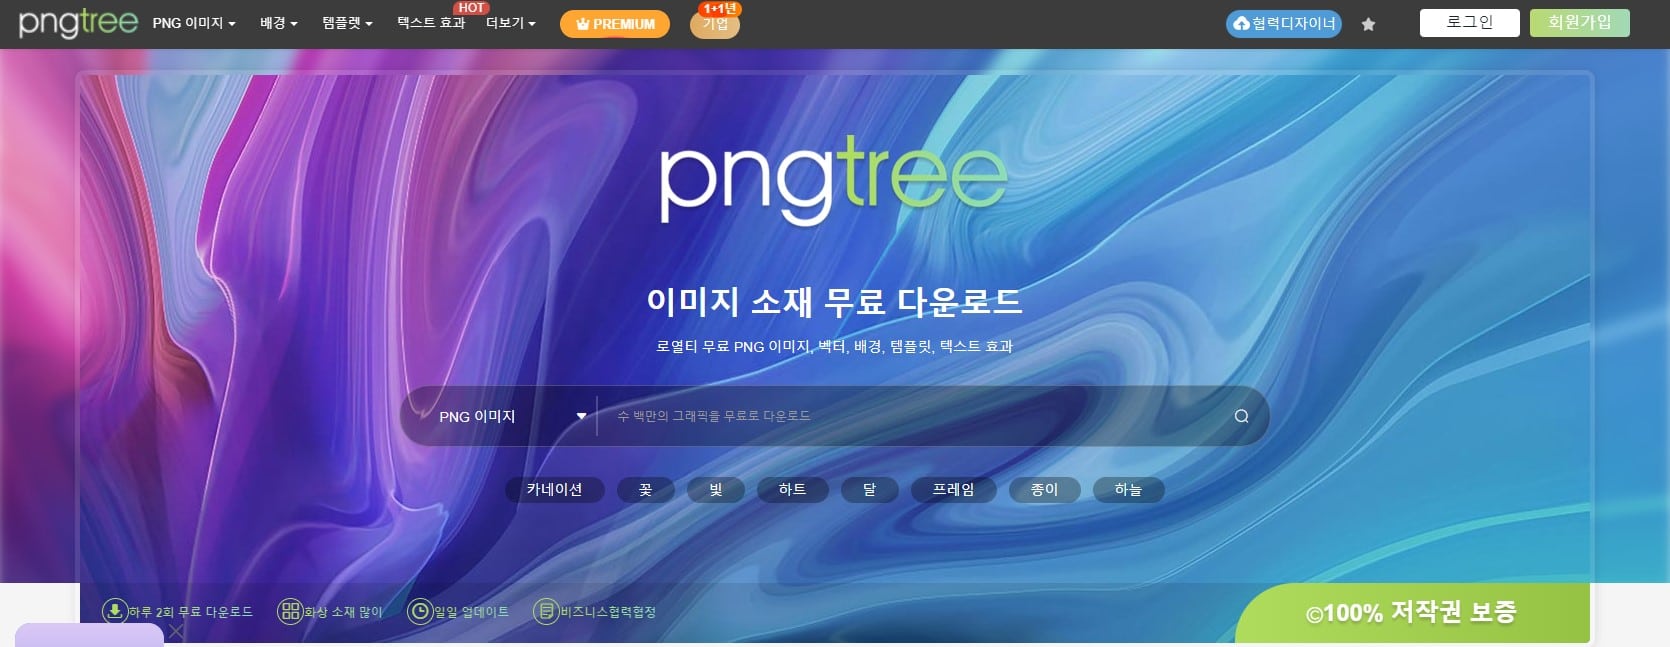 PNG TREE 사이트